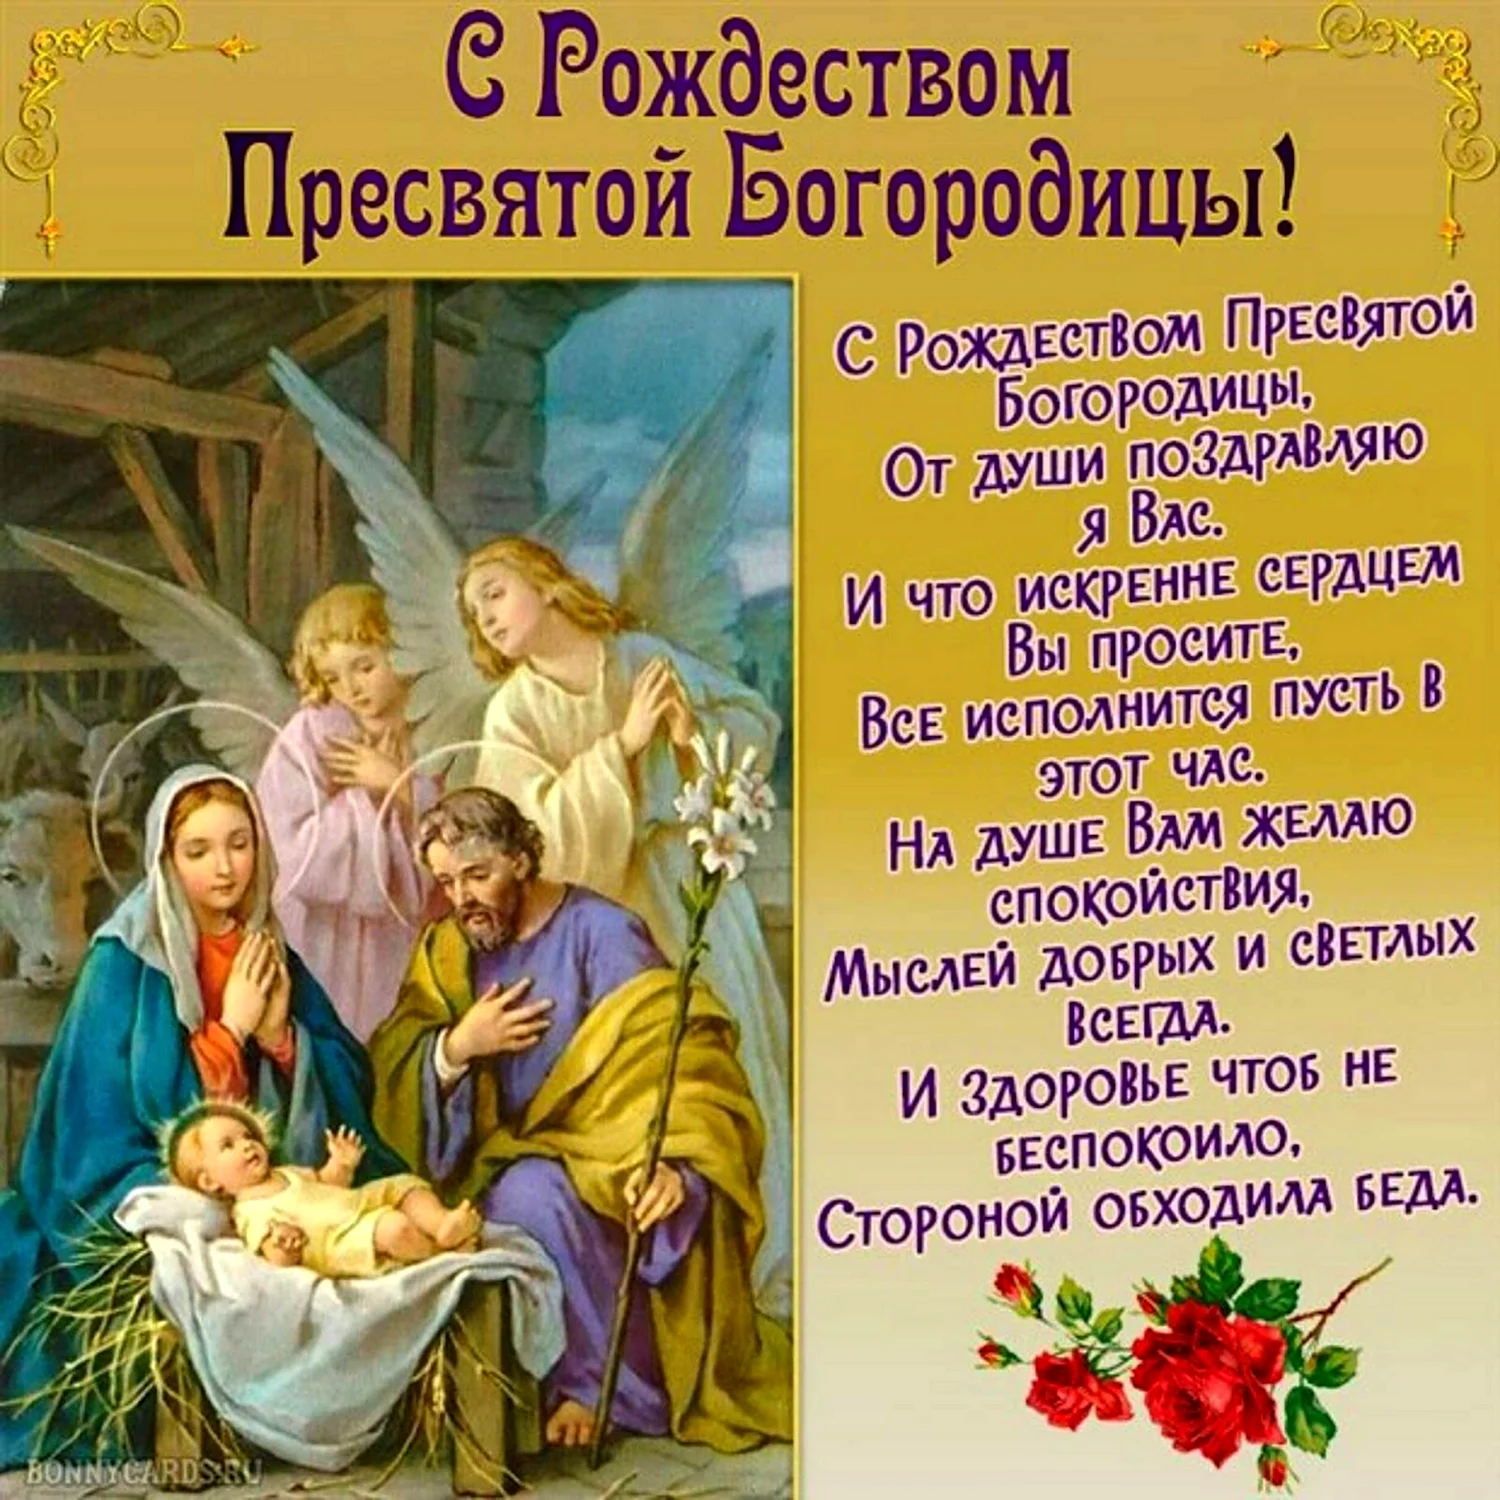 С праздником Рождества Пресвятой Богородицы